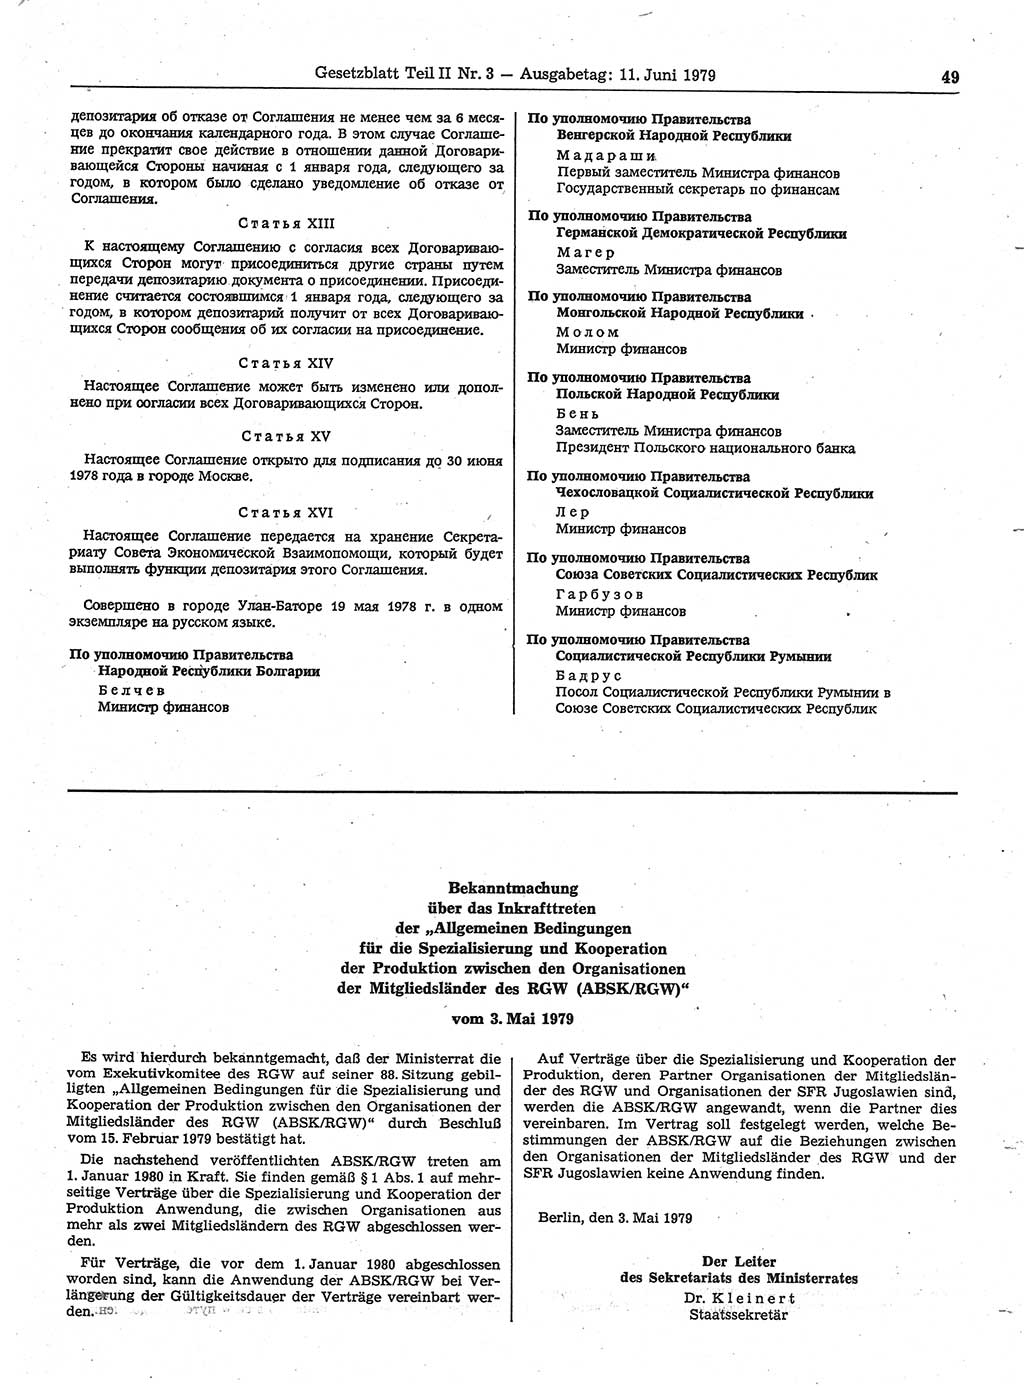 Gesetzblatt (GBl.) der Deutschen Demokratischen Republik (DDR) Teil ⅠⅠ 1979, Seite 49 (GBl. DDR ⅠⅠ 1979, S. 49)